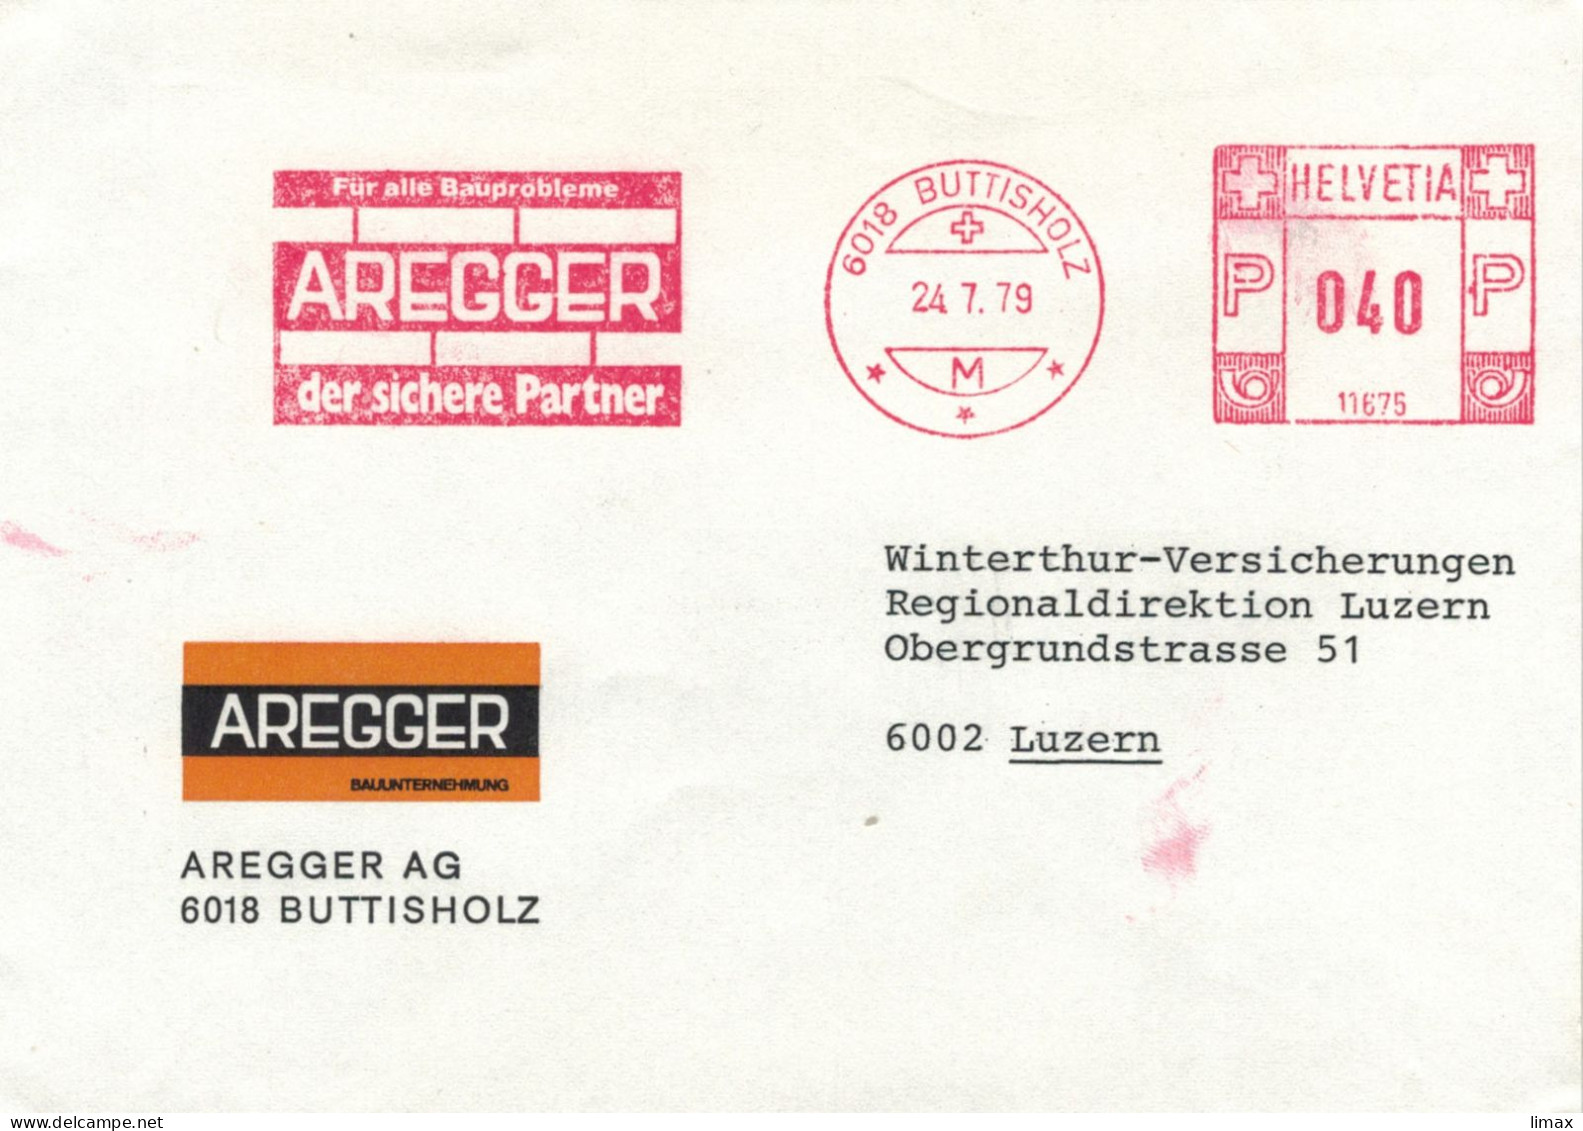 Aregger 6018 Buttisholz 1979 - Der Sichere Partner Für Alle Bauprobleme Stempel 11675 > Luzern - Frankeermachinen